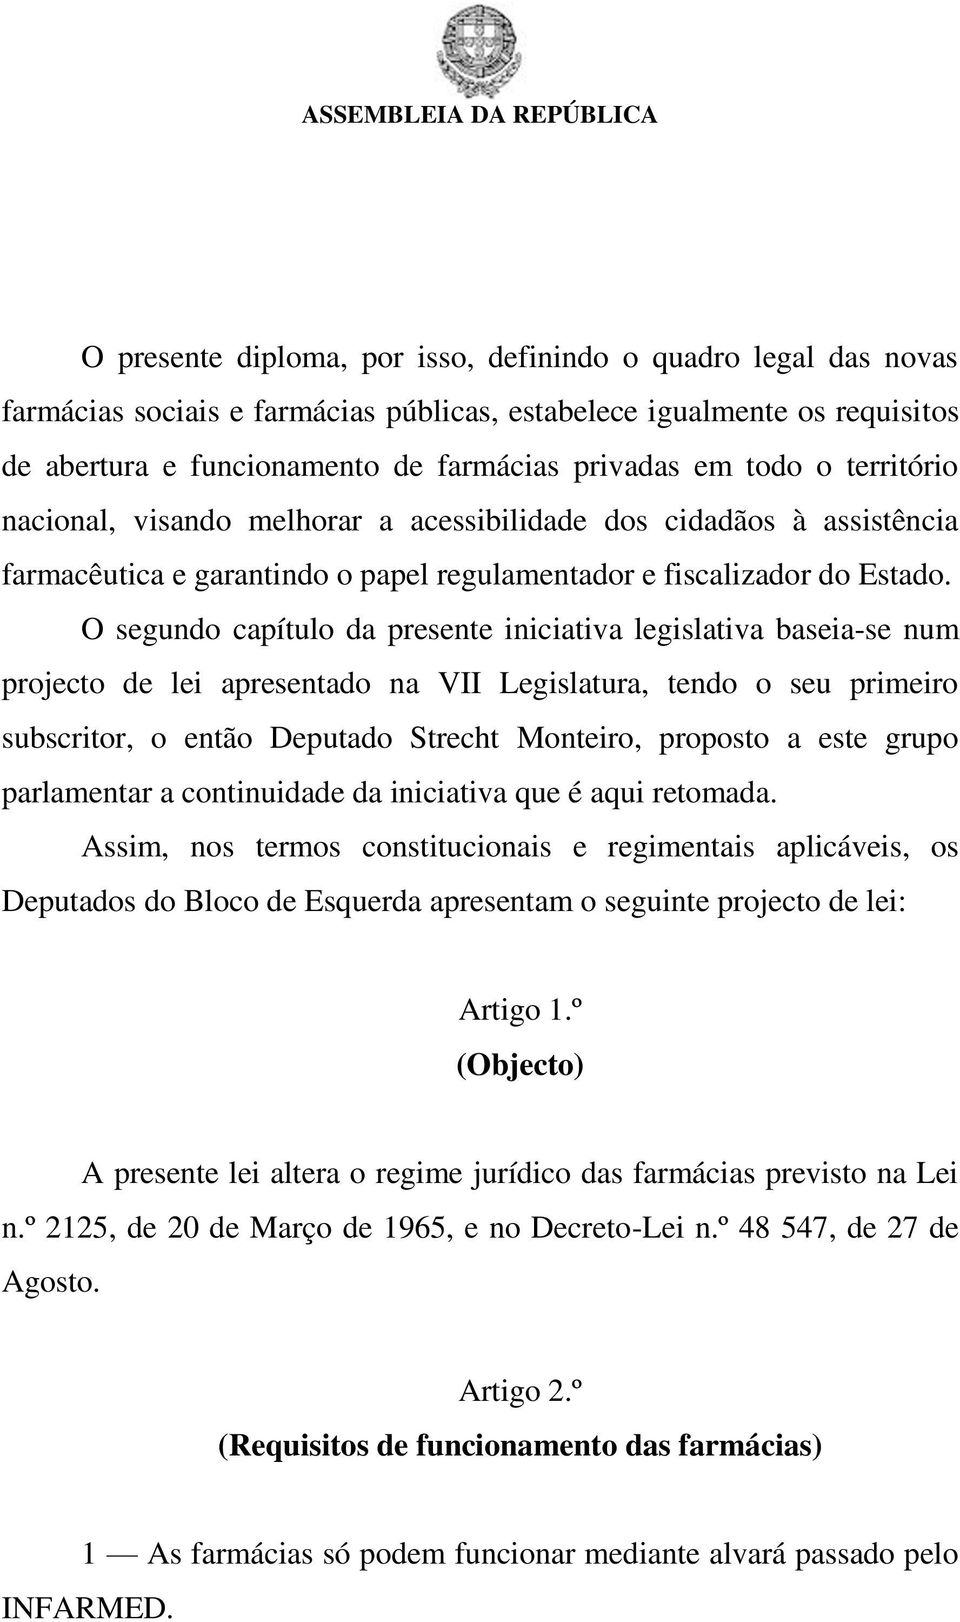 O segundo capítulo da presente iniciativa legislativa baseia-se num projecto de lei apresentado na VII Legislatura, tendo o seu primeiro subscritor, o então Deputado Strecht Monteiro, proposto a este